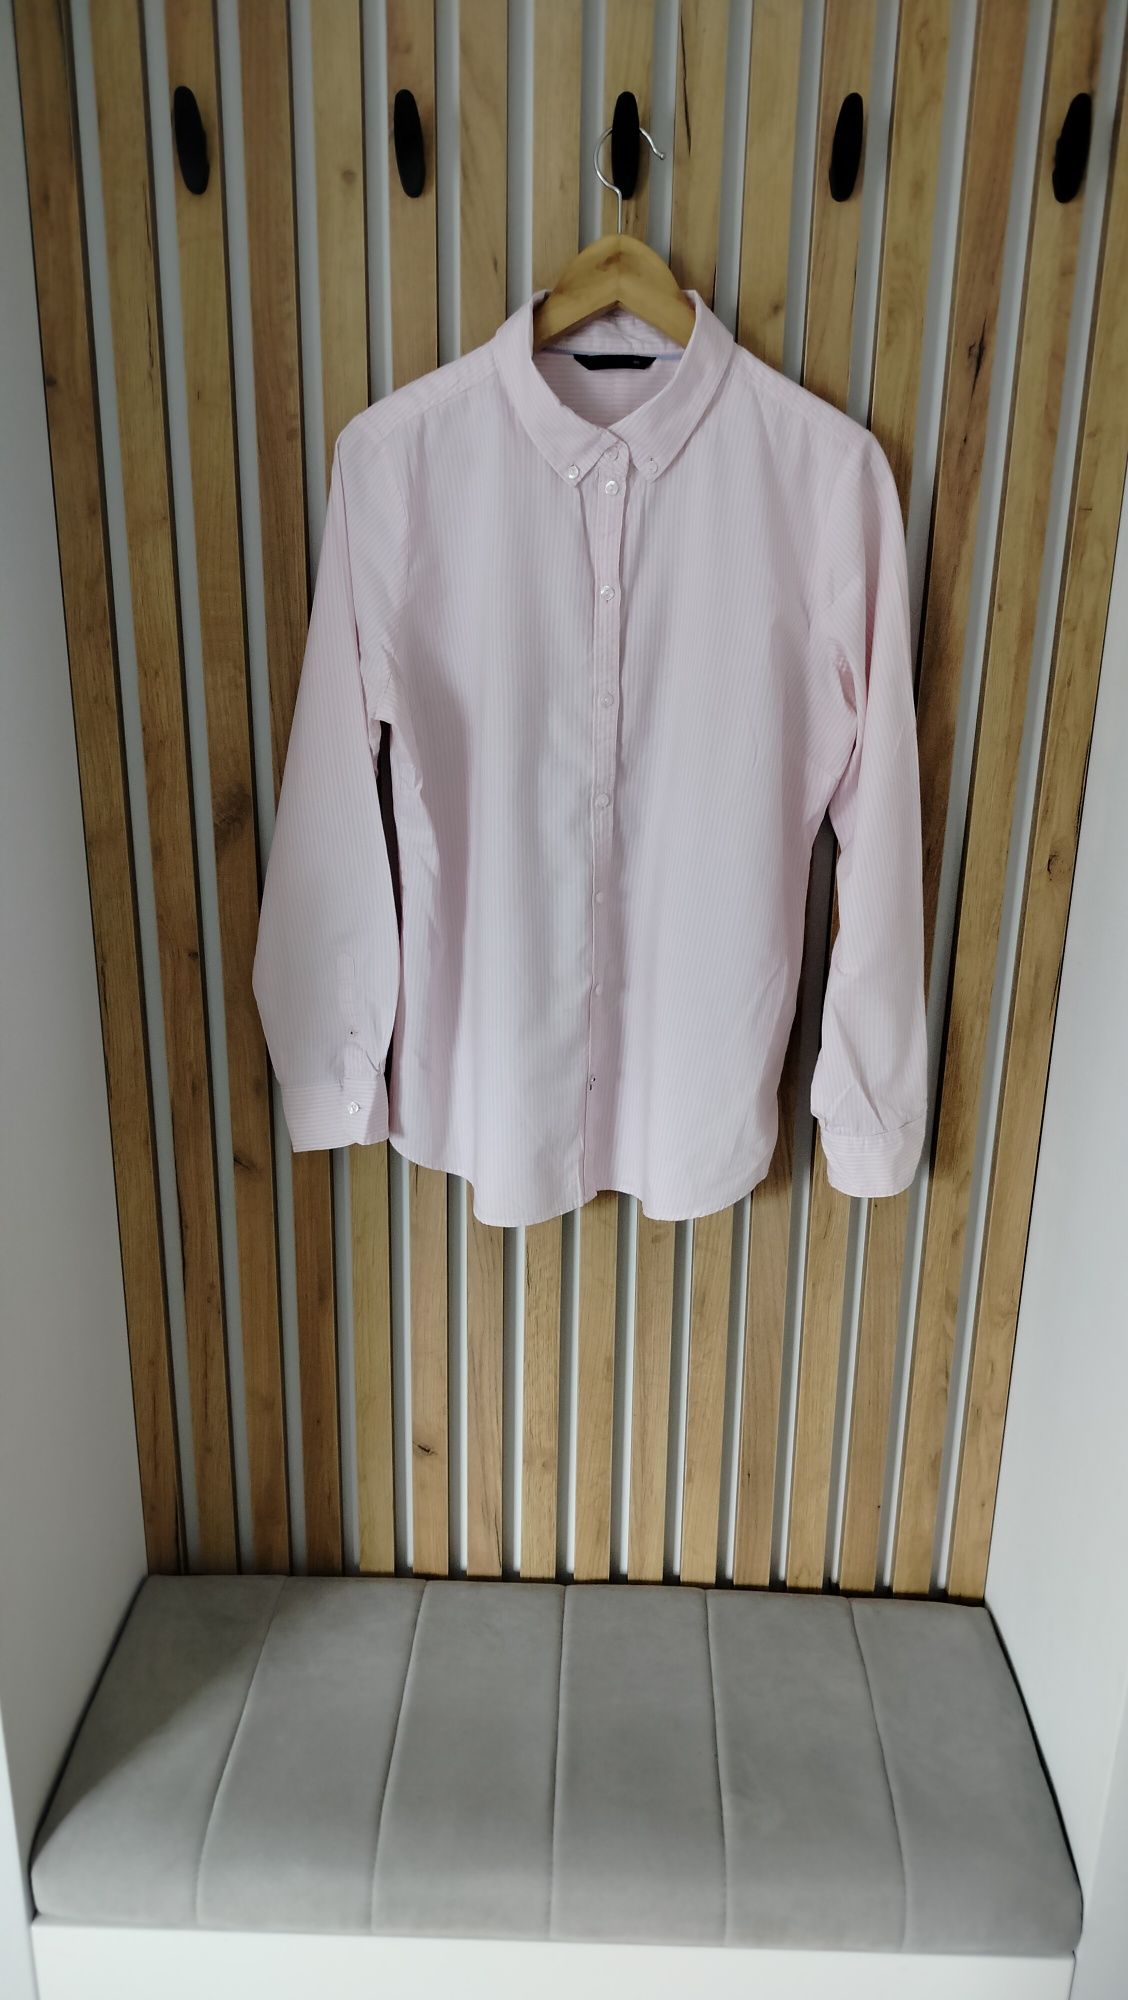 Koszula w paski różowa